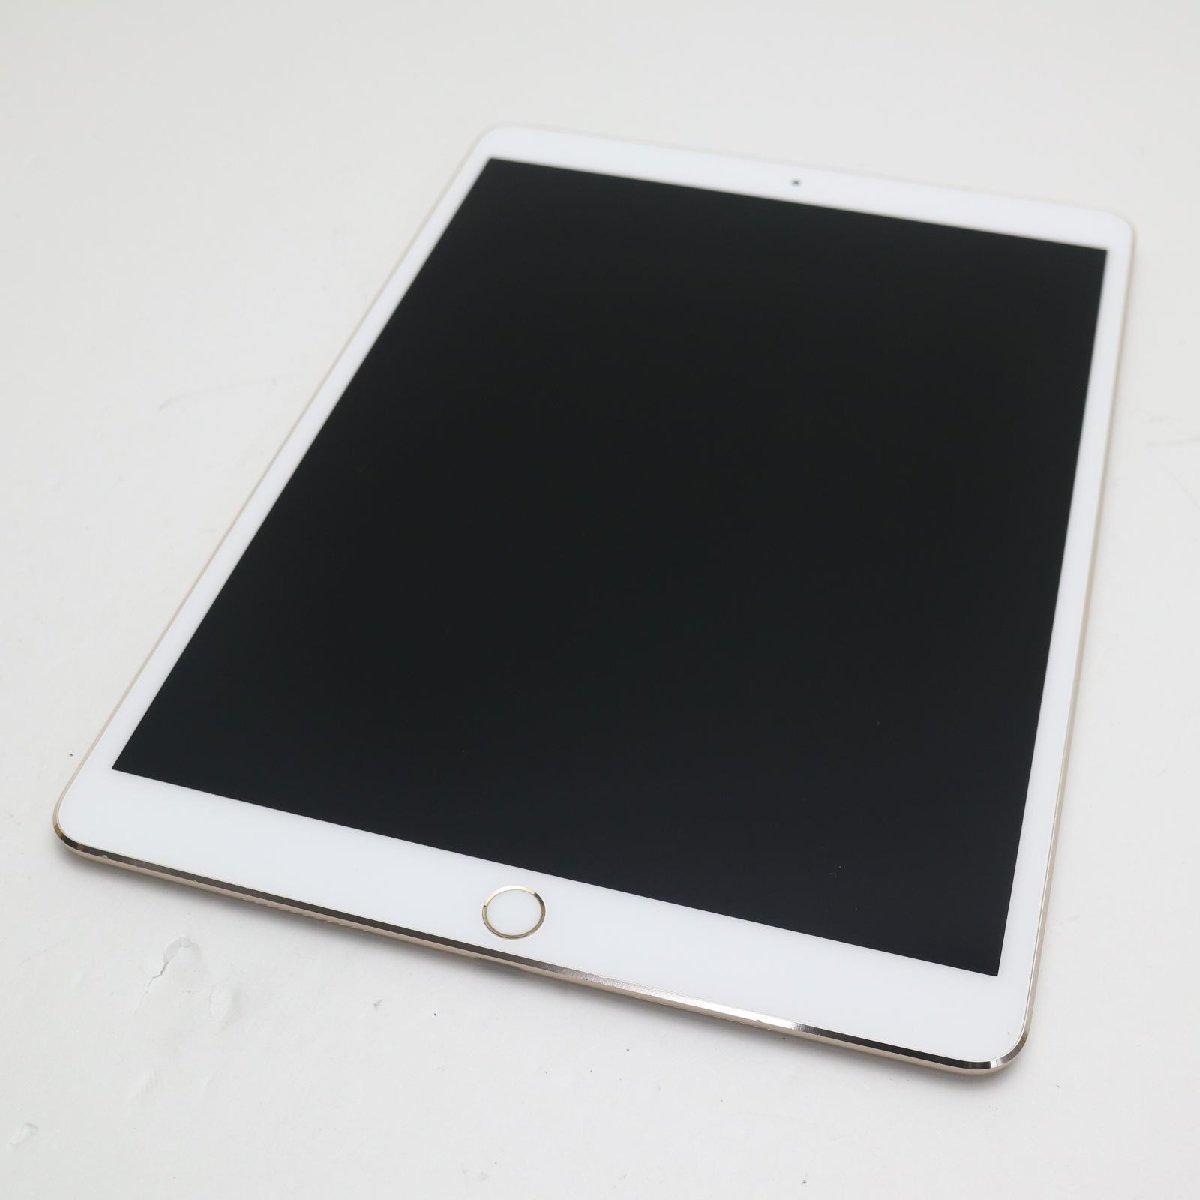 高い素材 超美品 SIMフリー iPad Pro 10.5インチ 256GB ゴールド